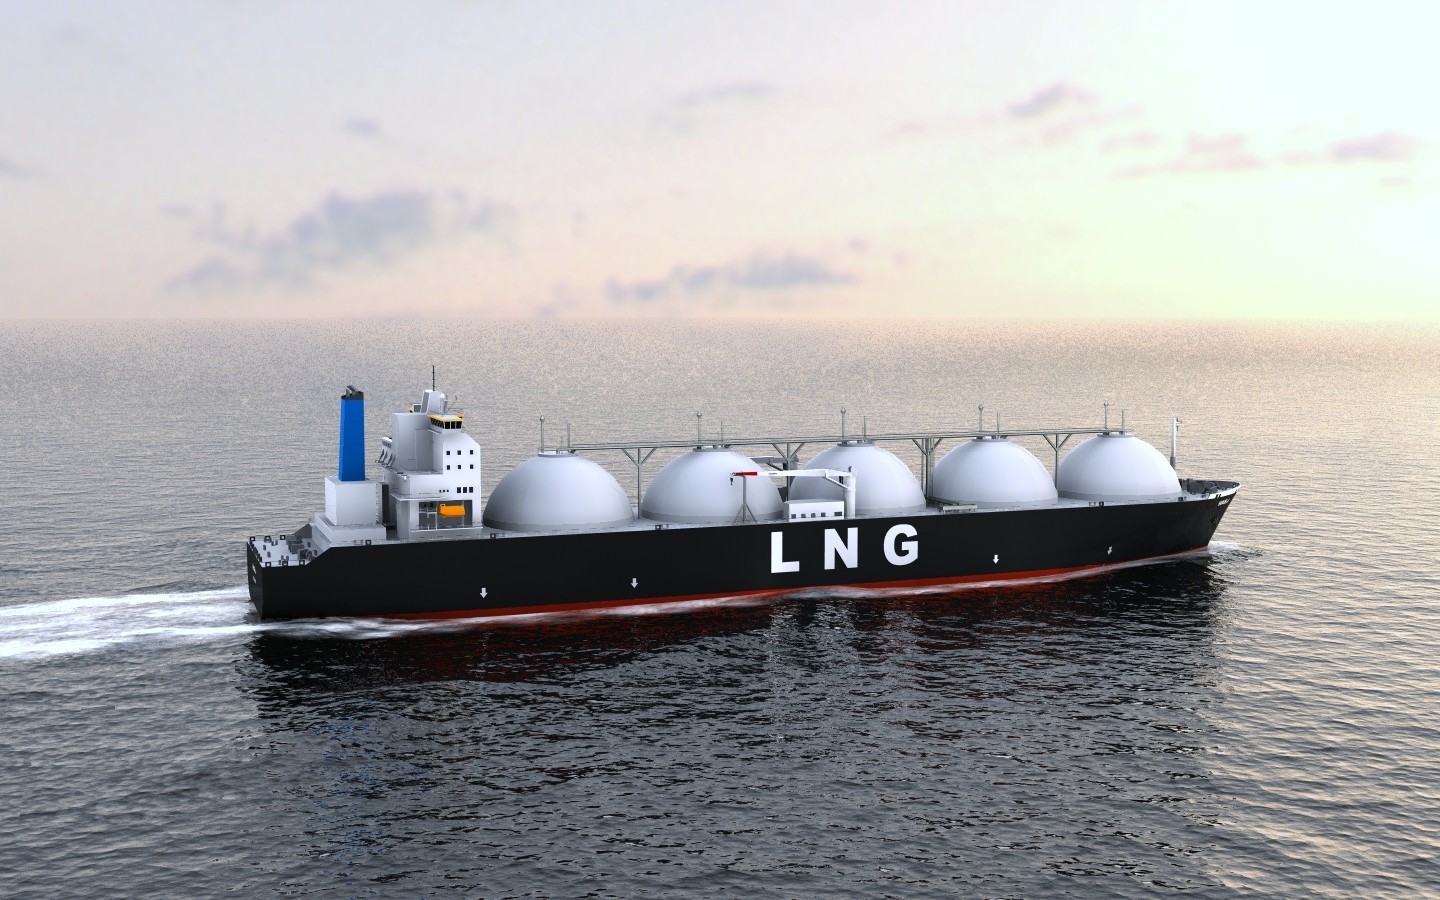 Πλοίο για να τροφοδοτεί πλοία με υγροποιημένο αέριο κατασκευάζει η ΔΕΠΑ